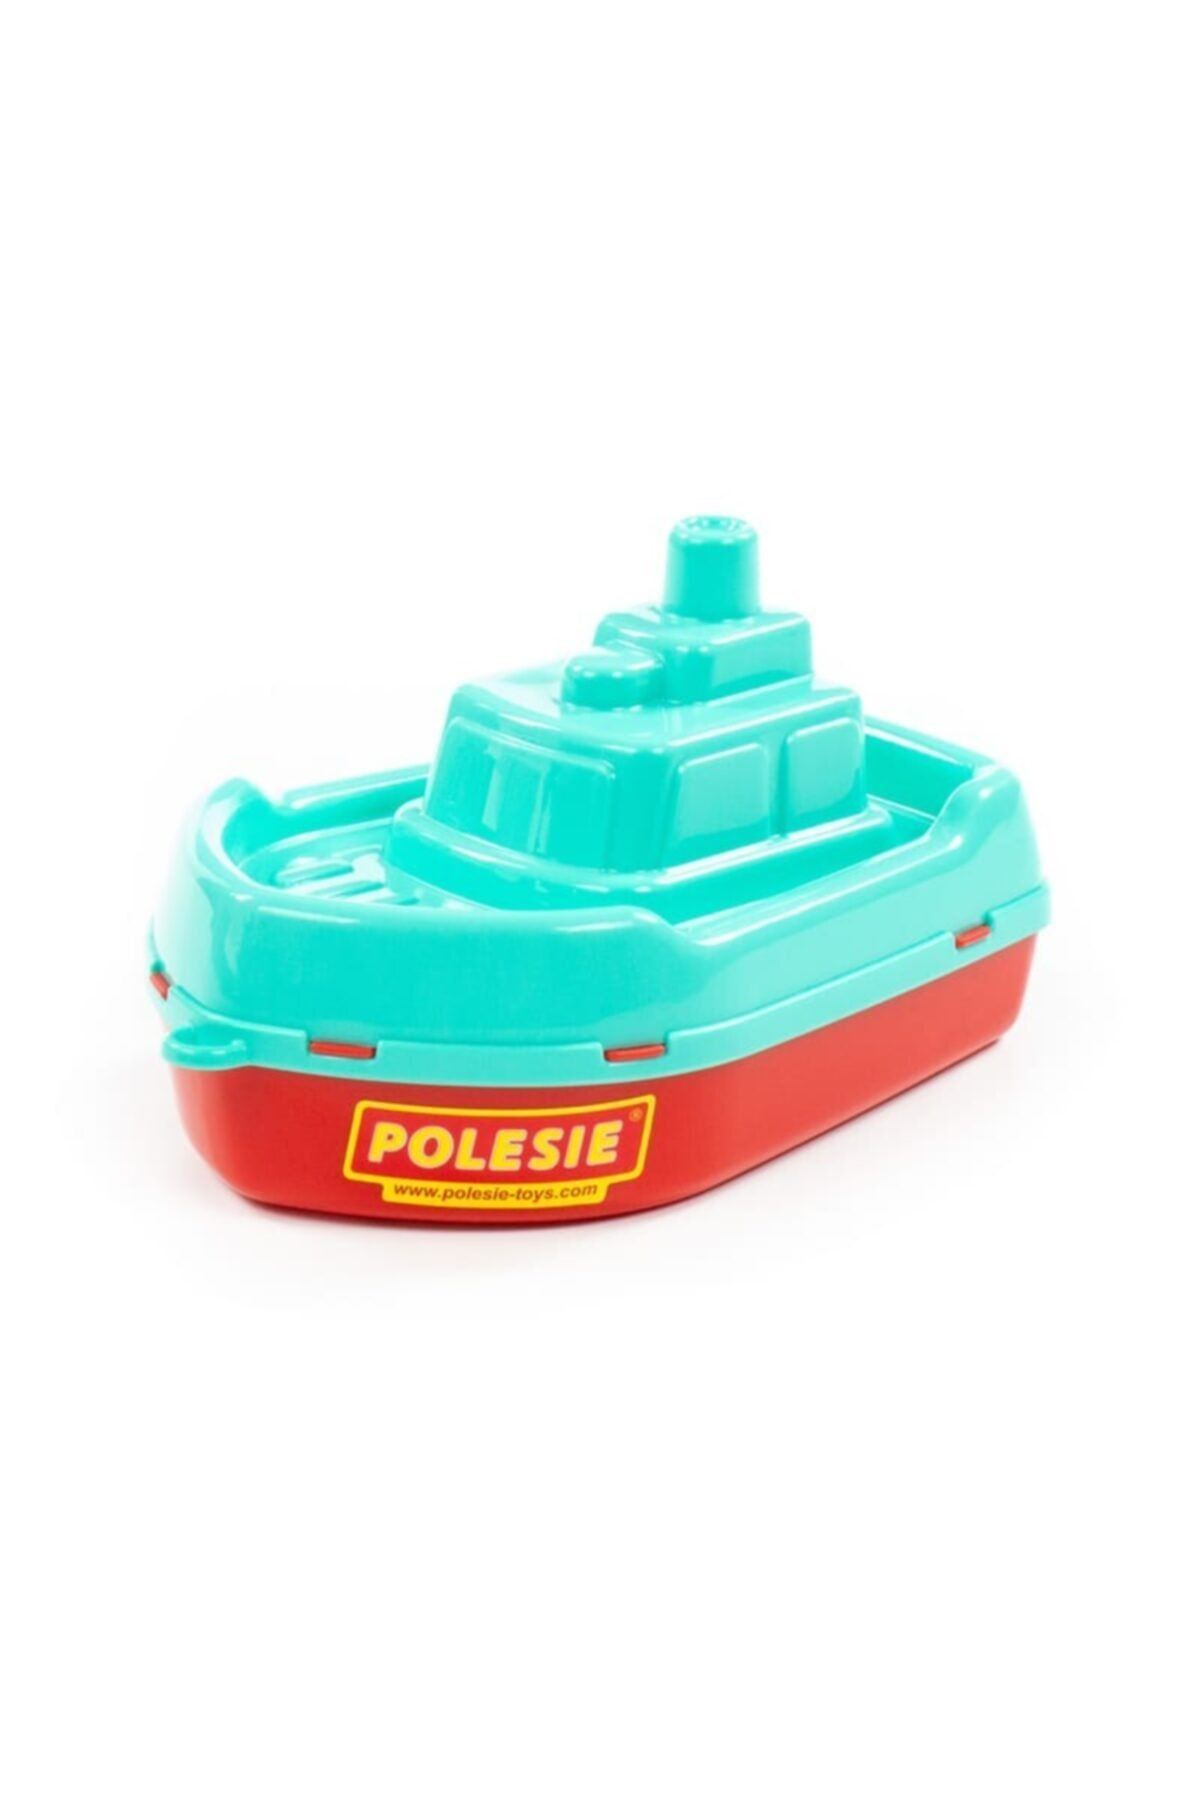 Polesie Buksir Gemi Oyuncak